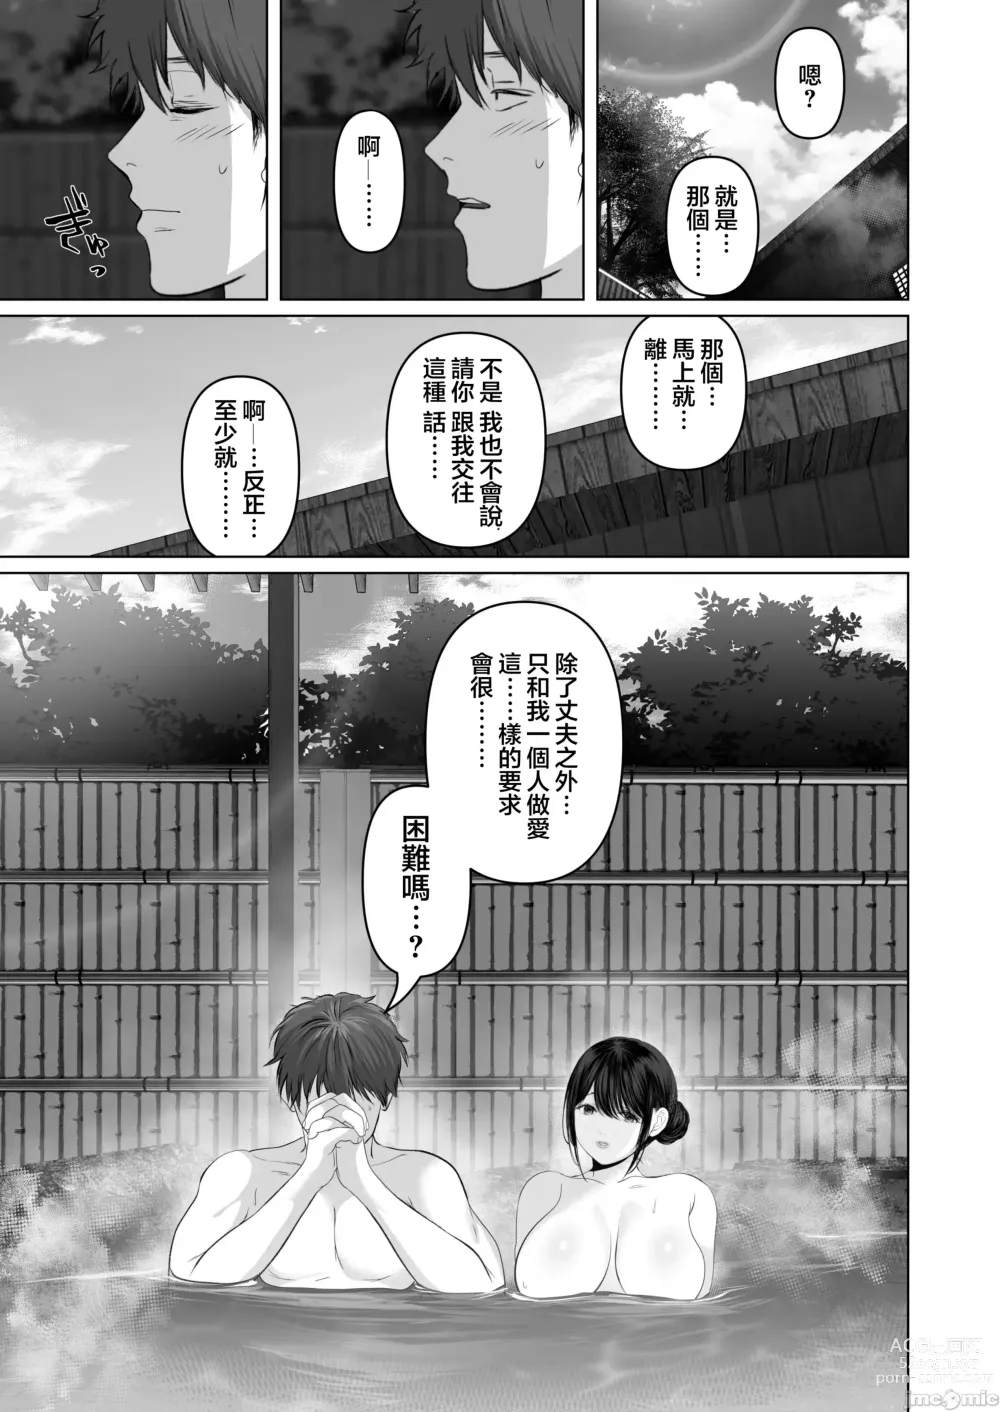 Page 555 of doujinshi Anata ga Nozomu nara 1-5